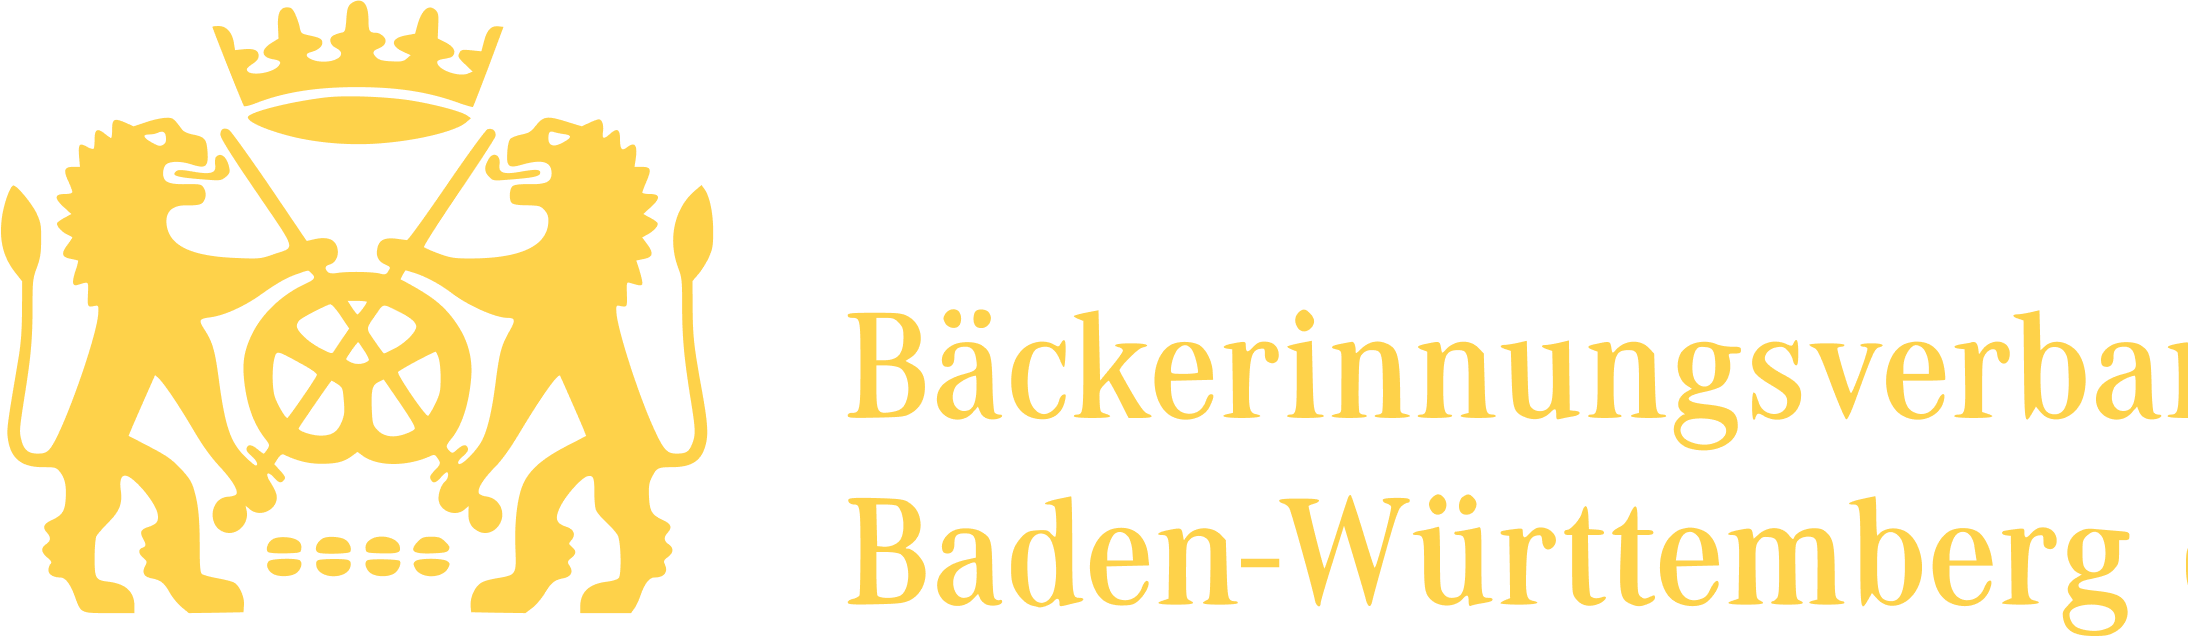 Logo der Bäckerinnung Baden-Württemberg